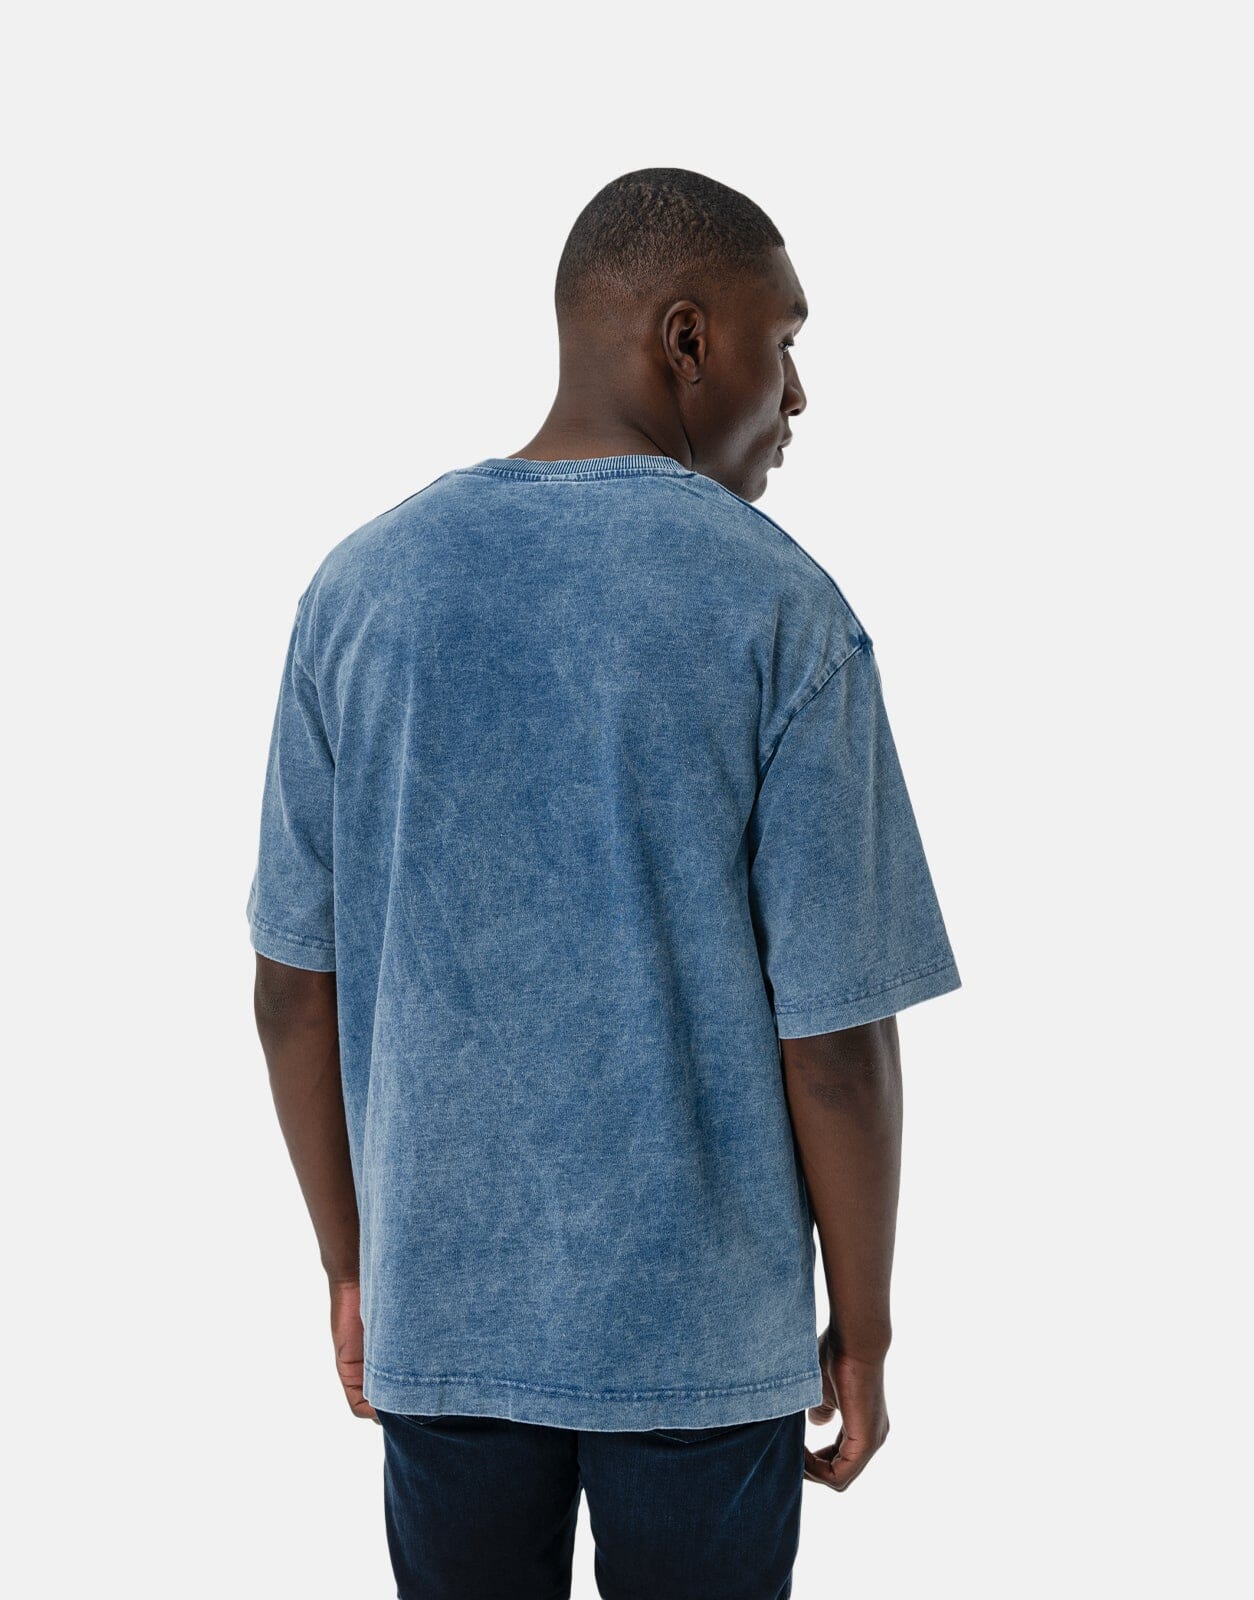 G-Star RAW Indigo Boxy Sun Fade Blue T-Shirt - Subwear